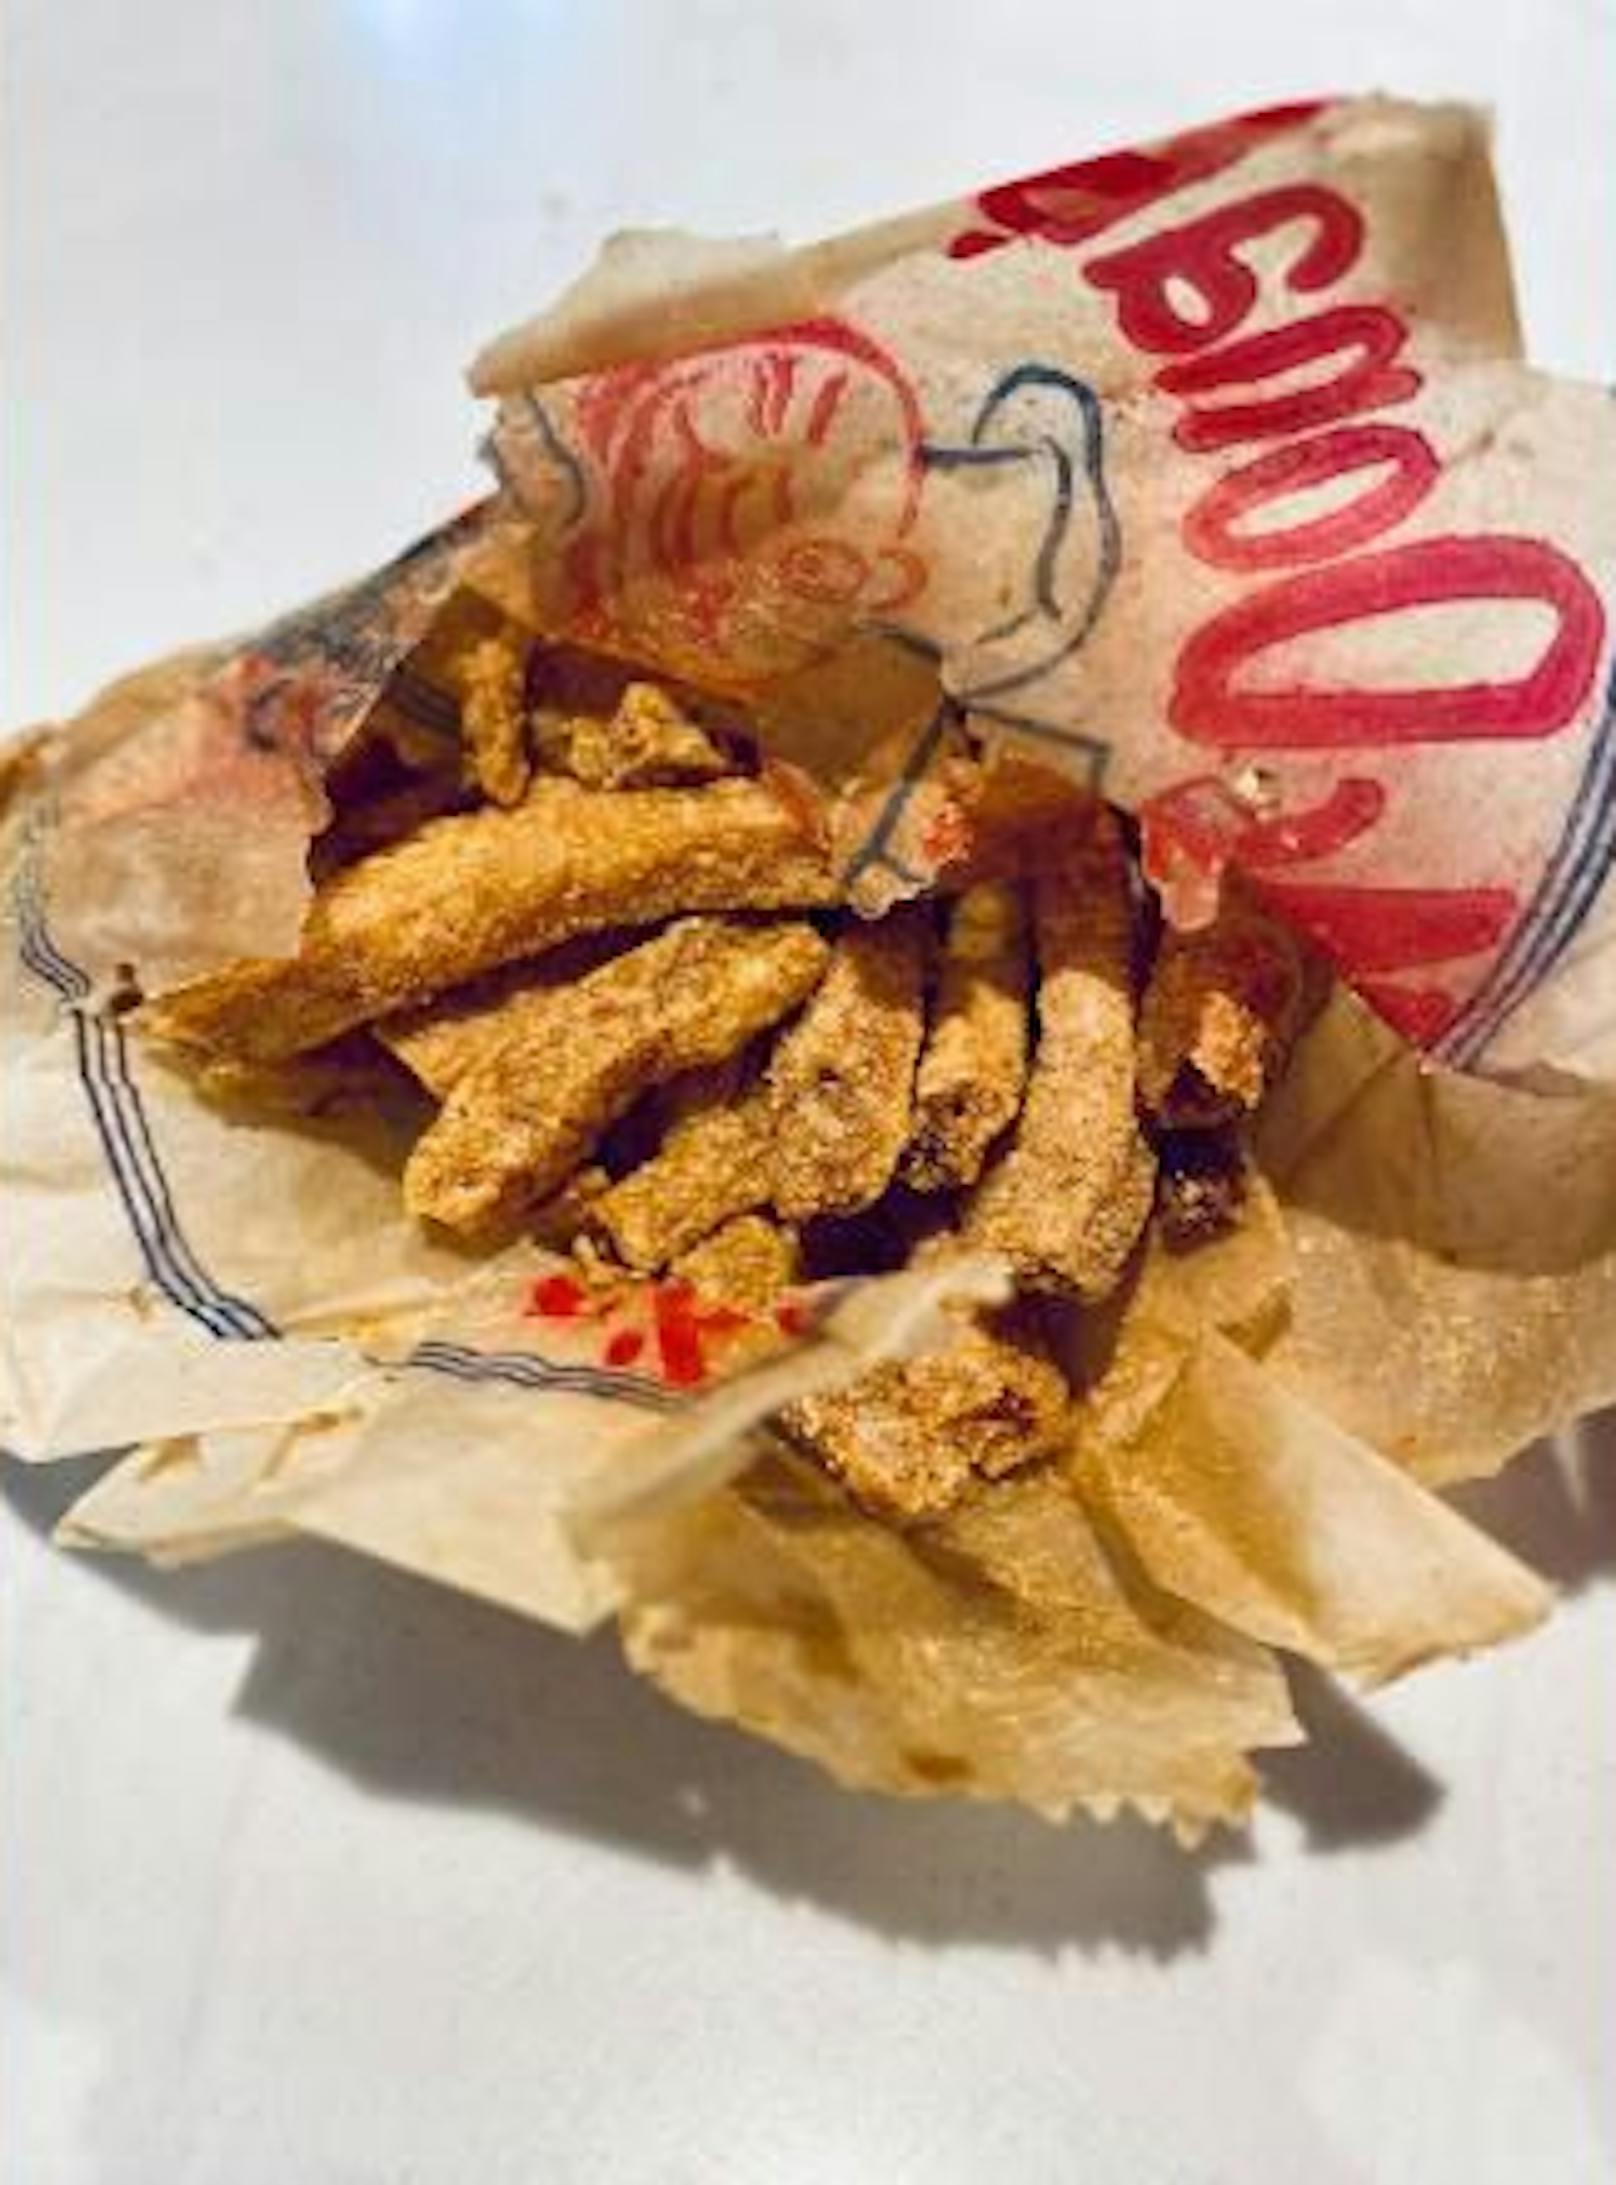 Ein US-Ehepaar hat in seinem Haus 63 Jahre alte Pommes frites von McDonald's gefunden. Sie sehen noch ziemlich gut erhalten aus.